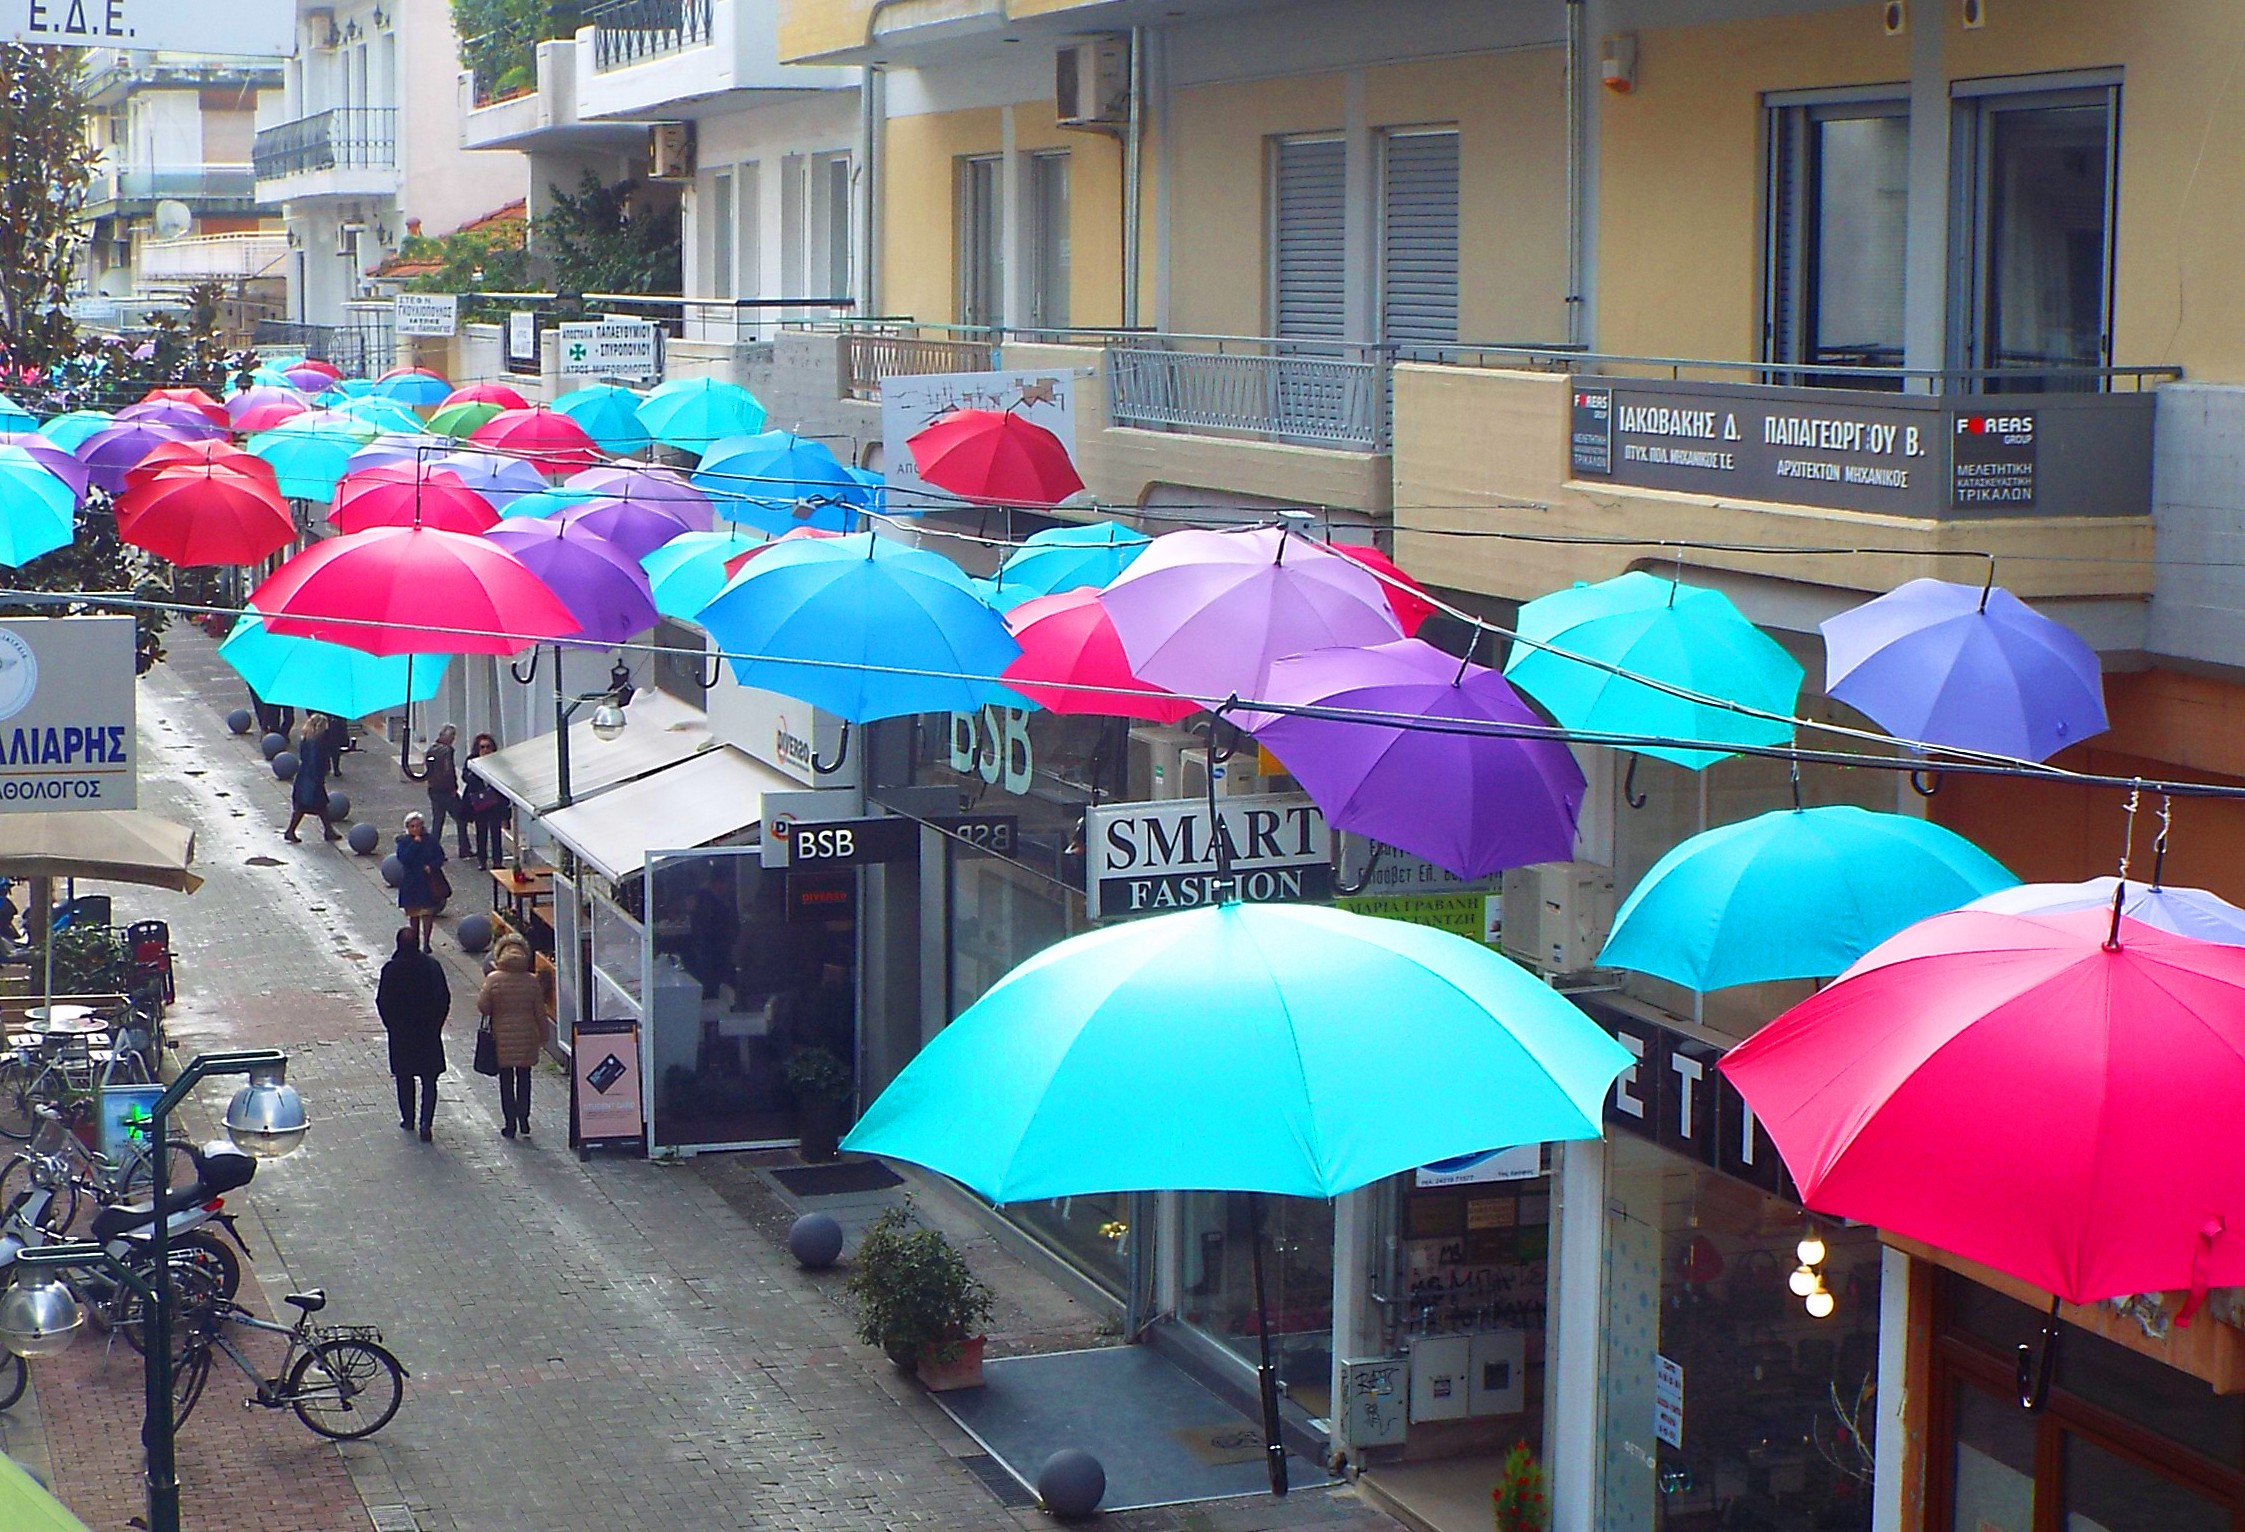 Ο δήμος στήριξε το δρόμο των χρωμάτων με τις 220 ομπρέλες στην Απόλλωνος 